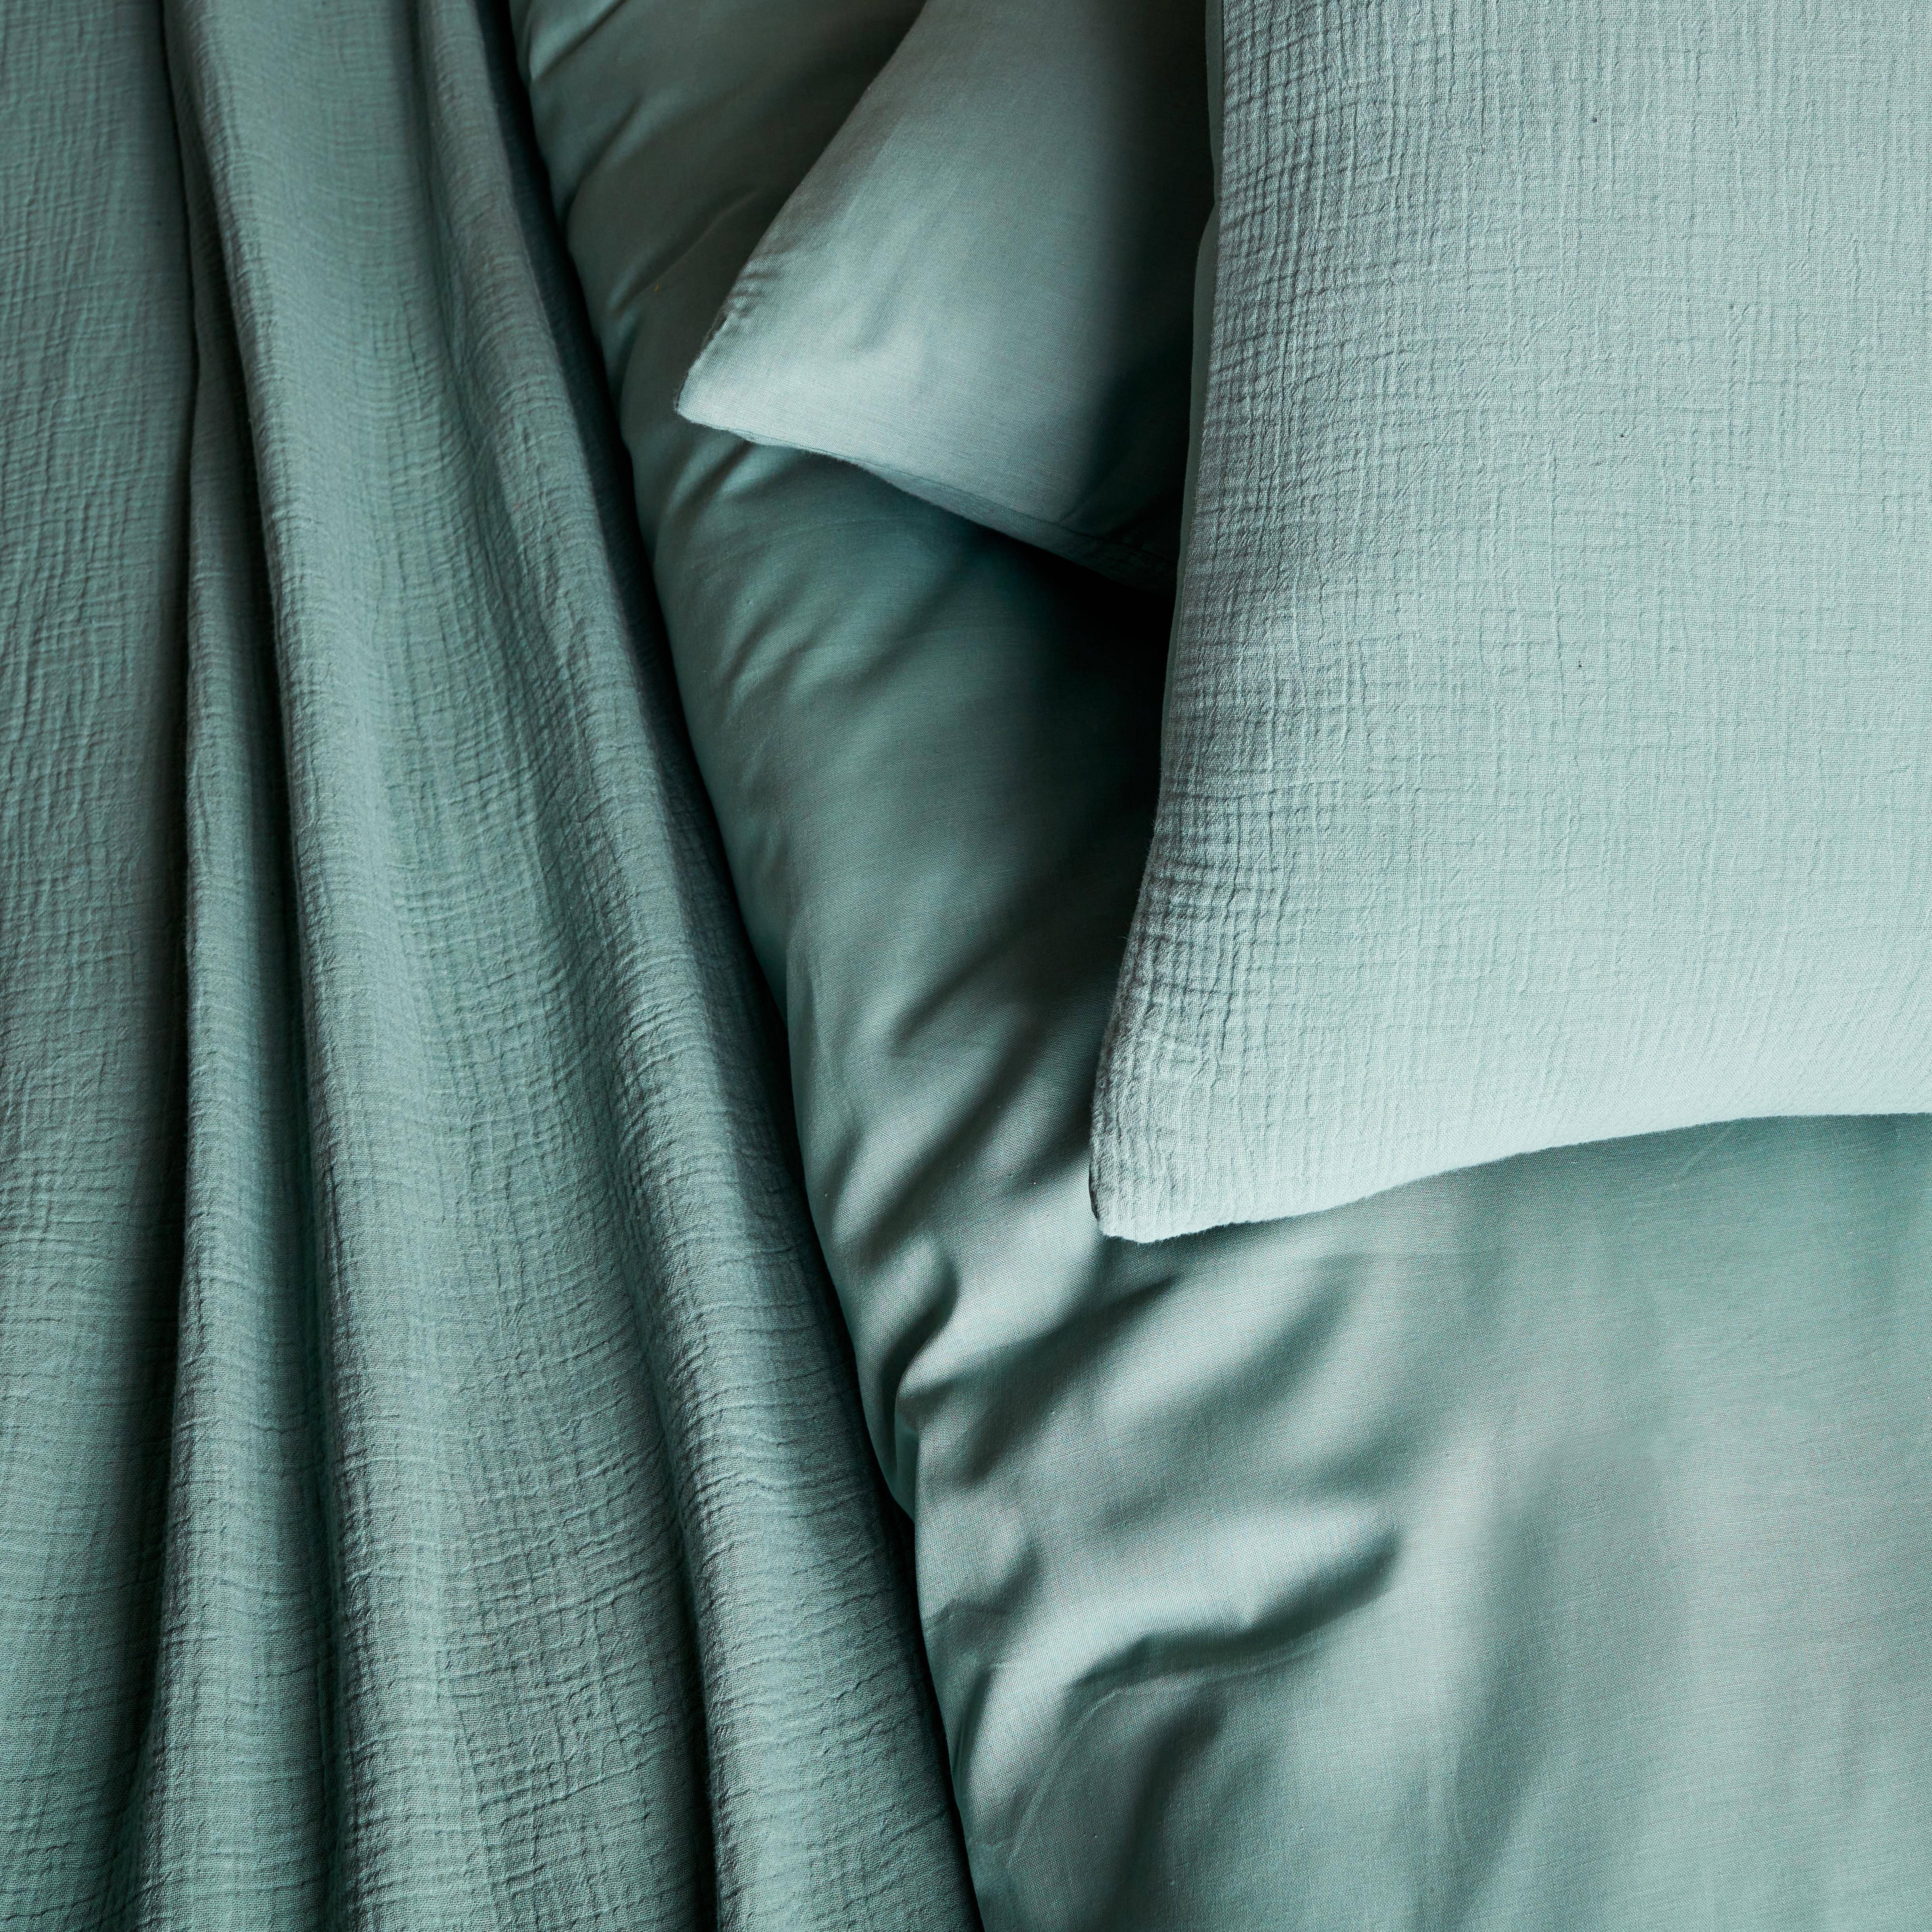 Bettwäschegarnitur aus mandelgrüner Baumwoll-Gaze / Baumwolle, 1 Person, 1 Bettbezug mit 1 Kopfkissenbezug 140 x 200 cm,sweeek,Photo2